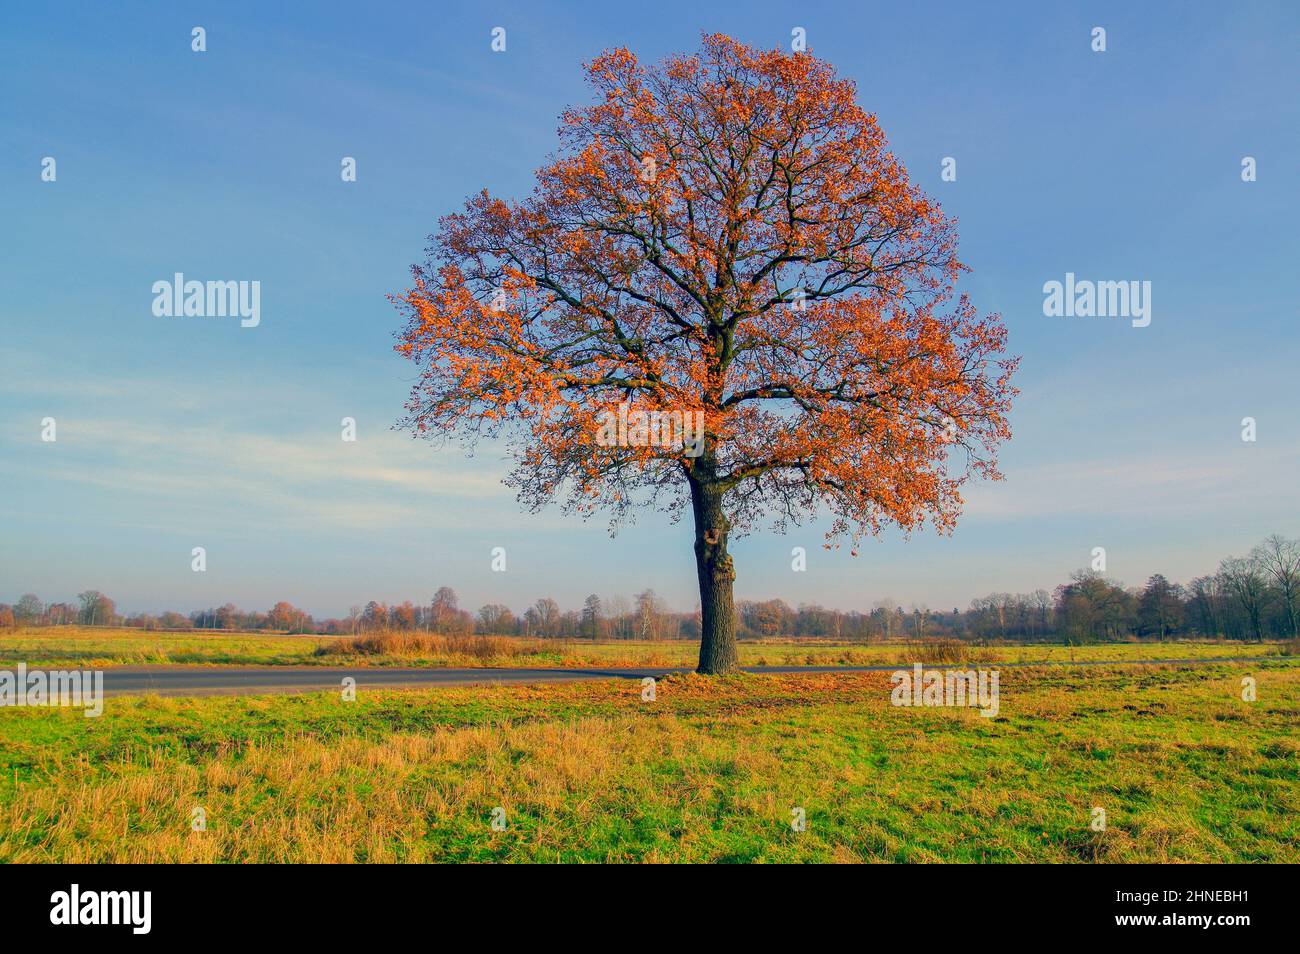 Einsame Eiche im Herbst gegen einen blauen Himmel. Die Blätter sind braun gefärbt. Stockfoto